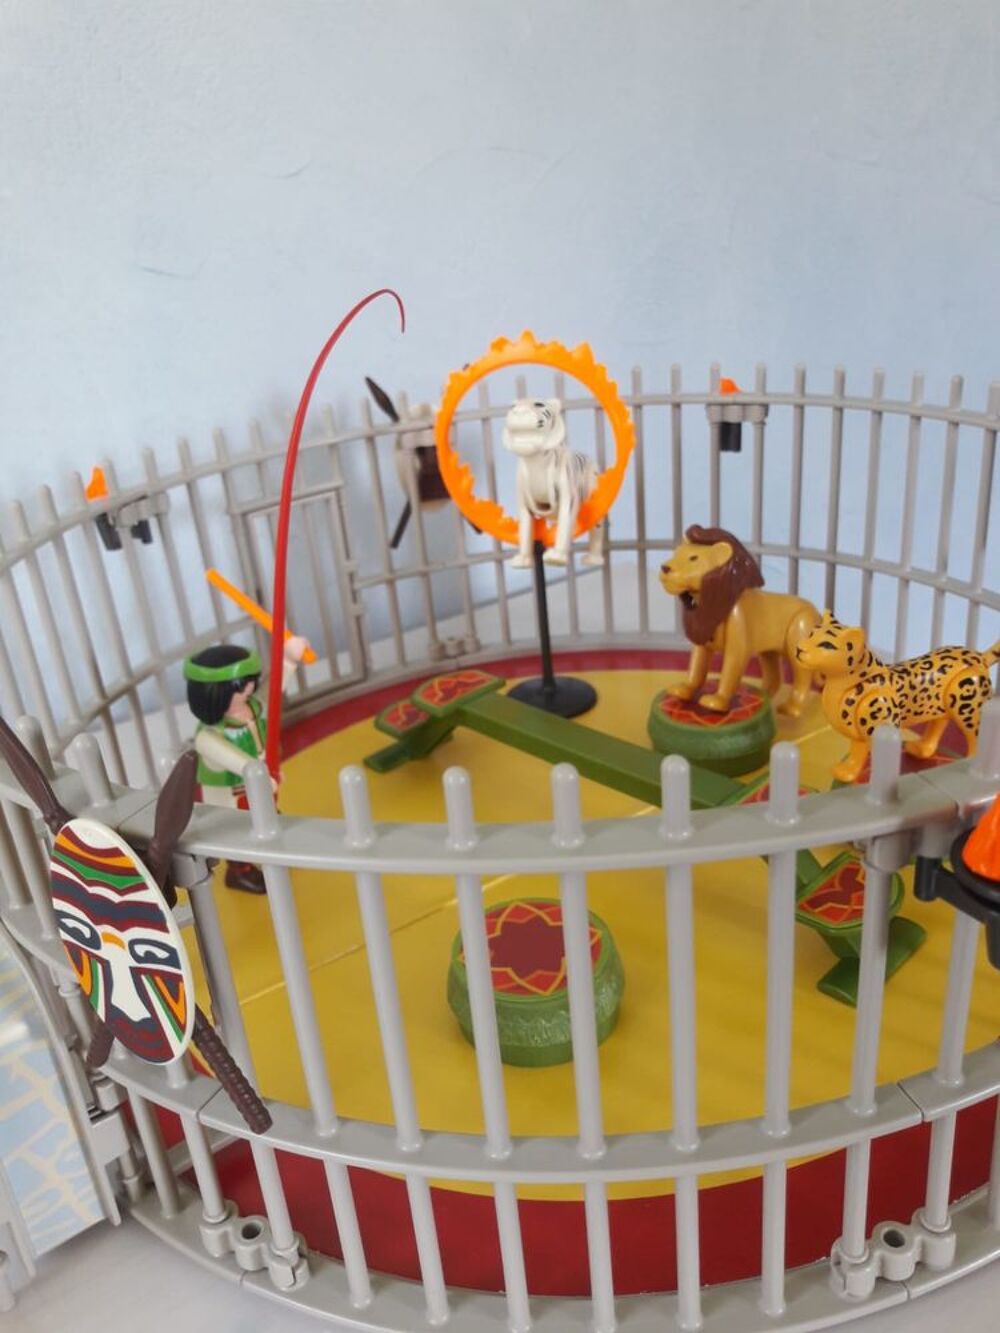 Playmobil 4233 Dresseur avec cage aux fauves Jeux / jouets